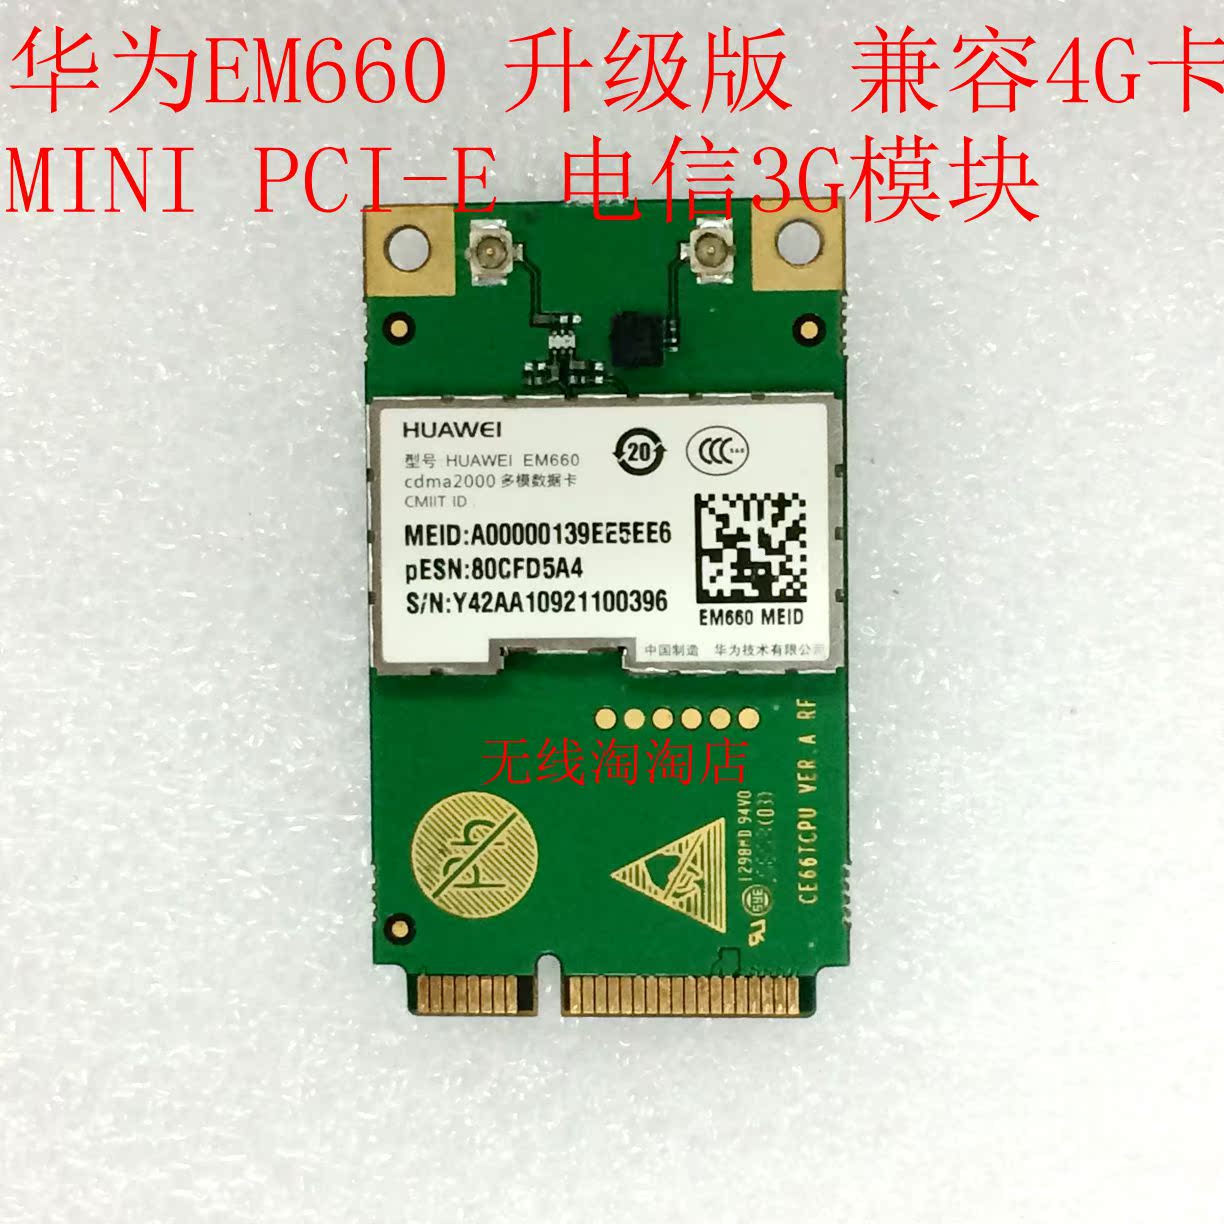 华为EM660 升级版 兼容4G卡 MINI PCI-E 电信3G模块 LINUX 现货